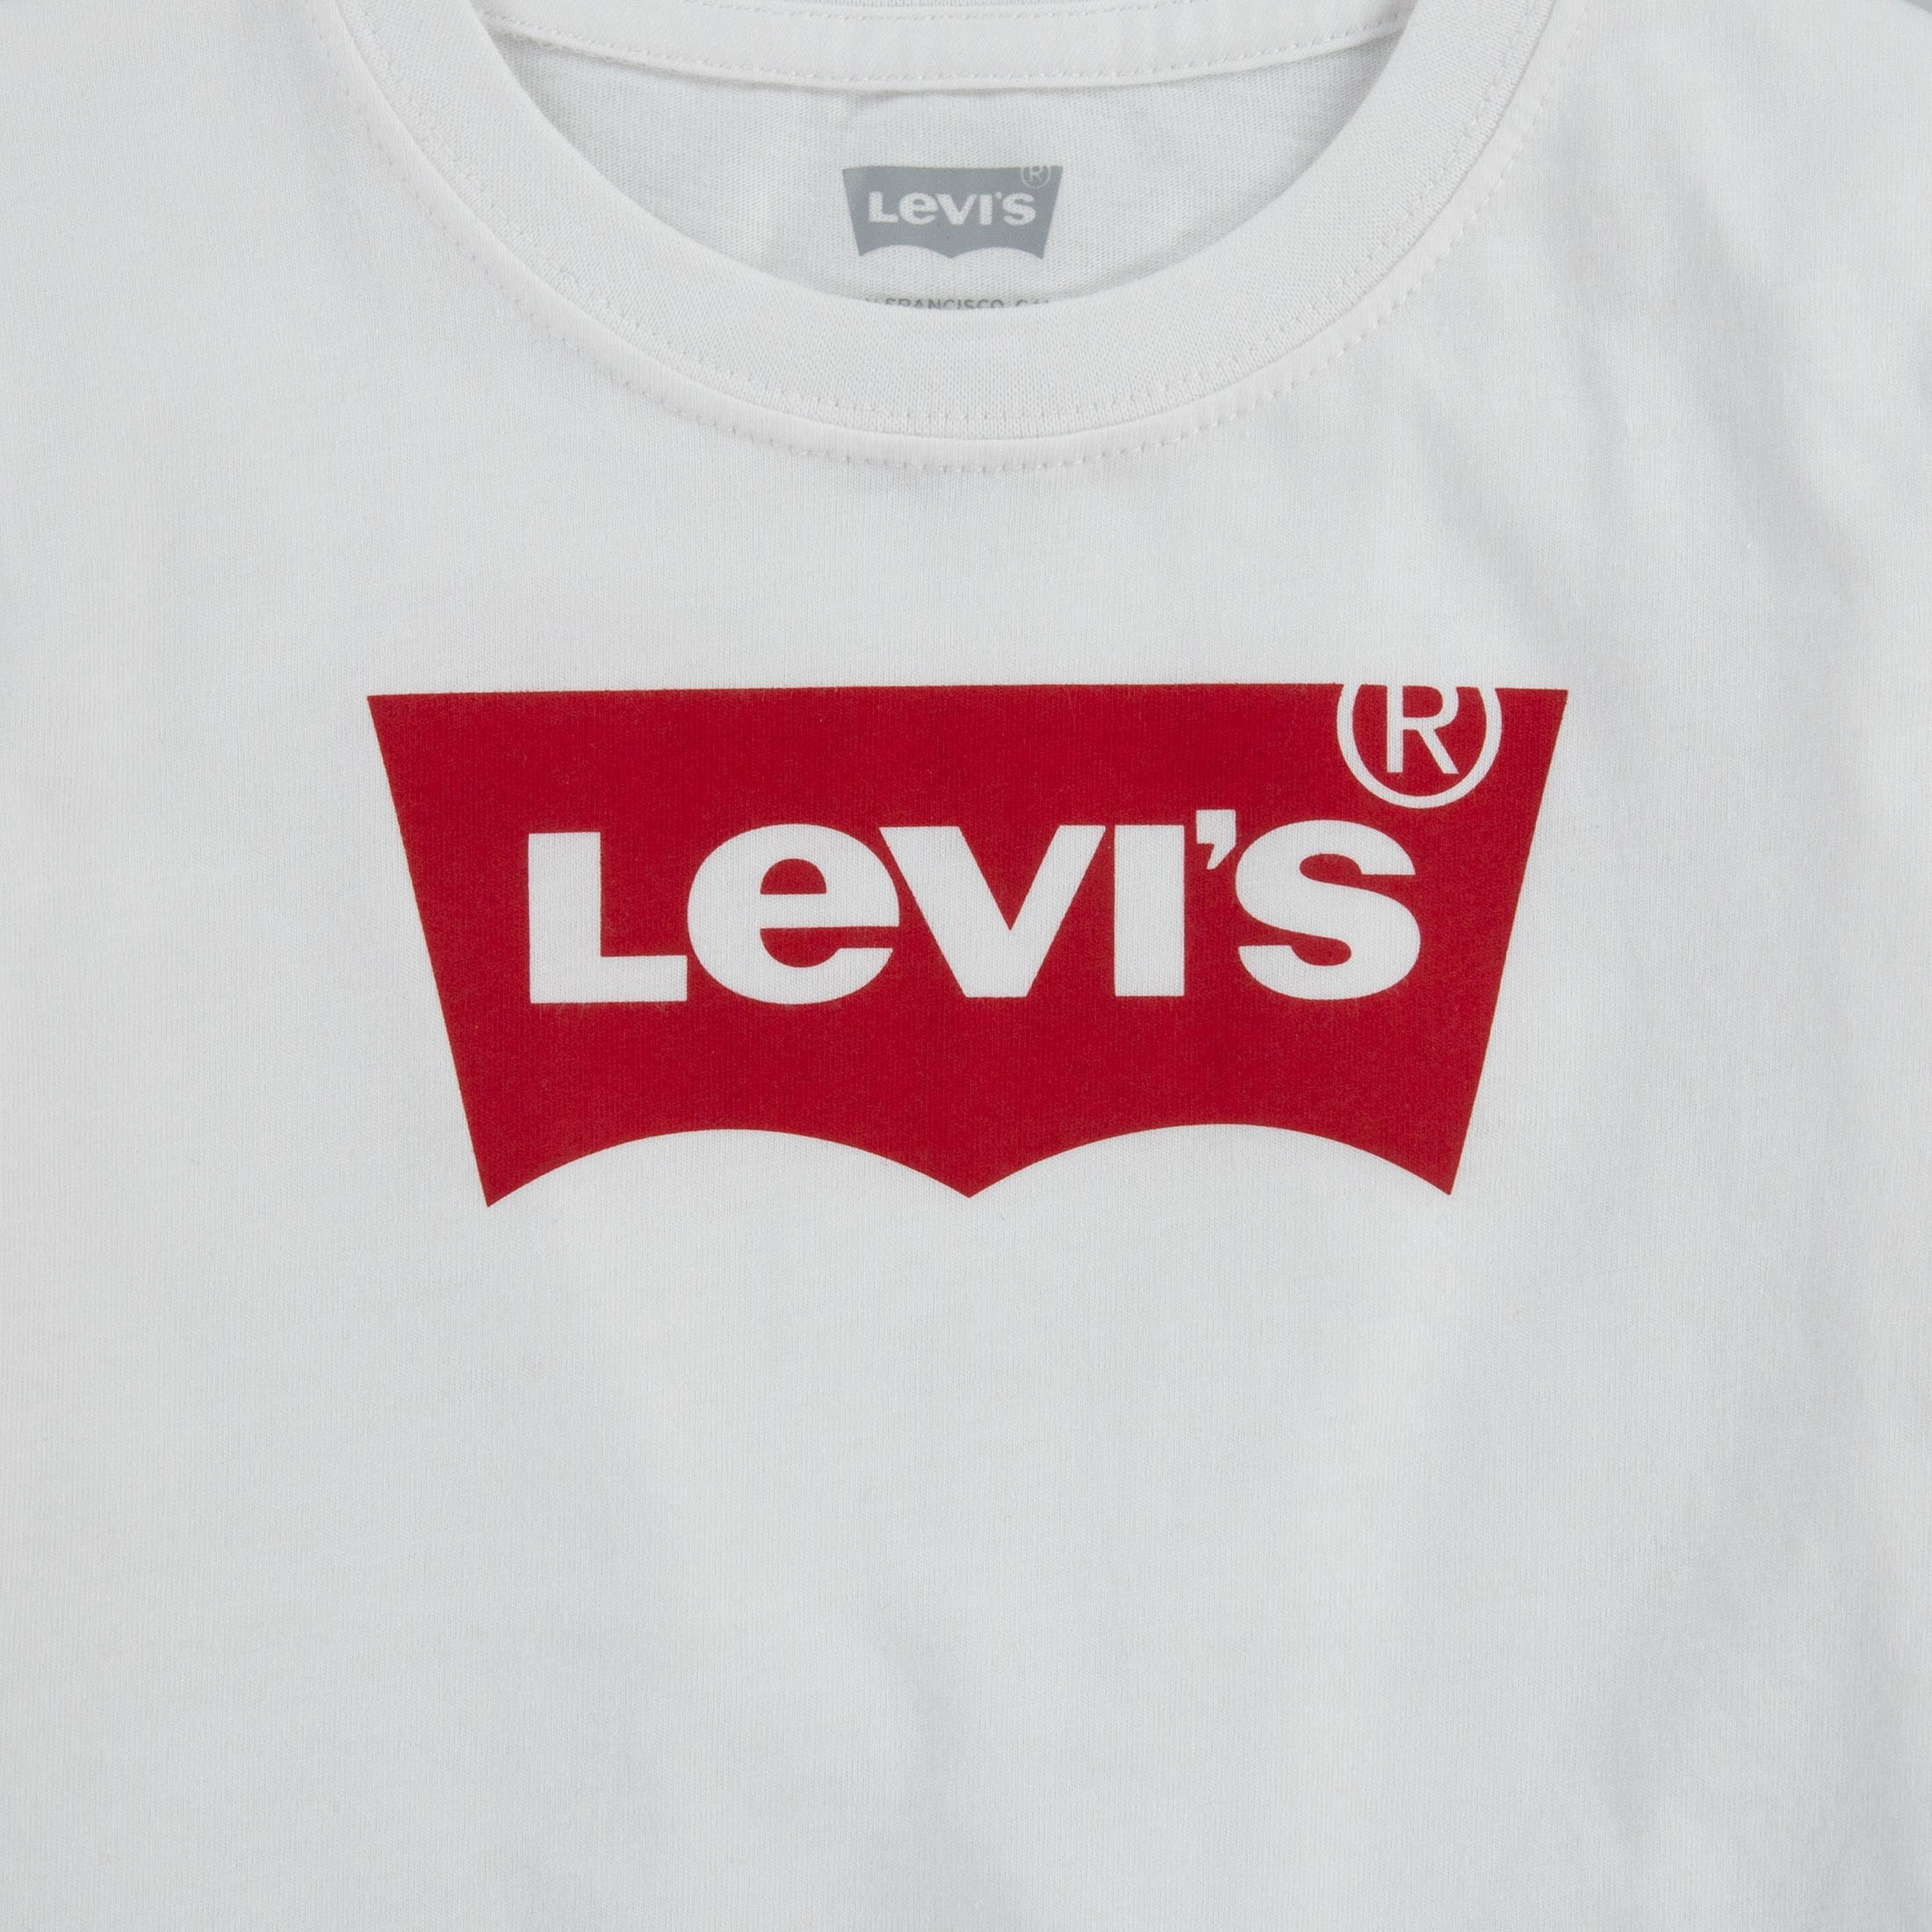 Levi's Boys' Short Sleeve Batwing T-Shirt, Sizes 4-18 - image 2 of 7